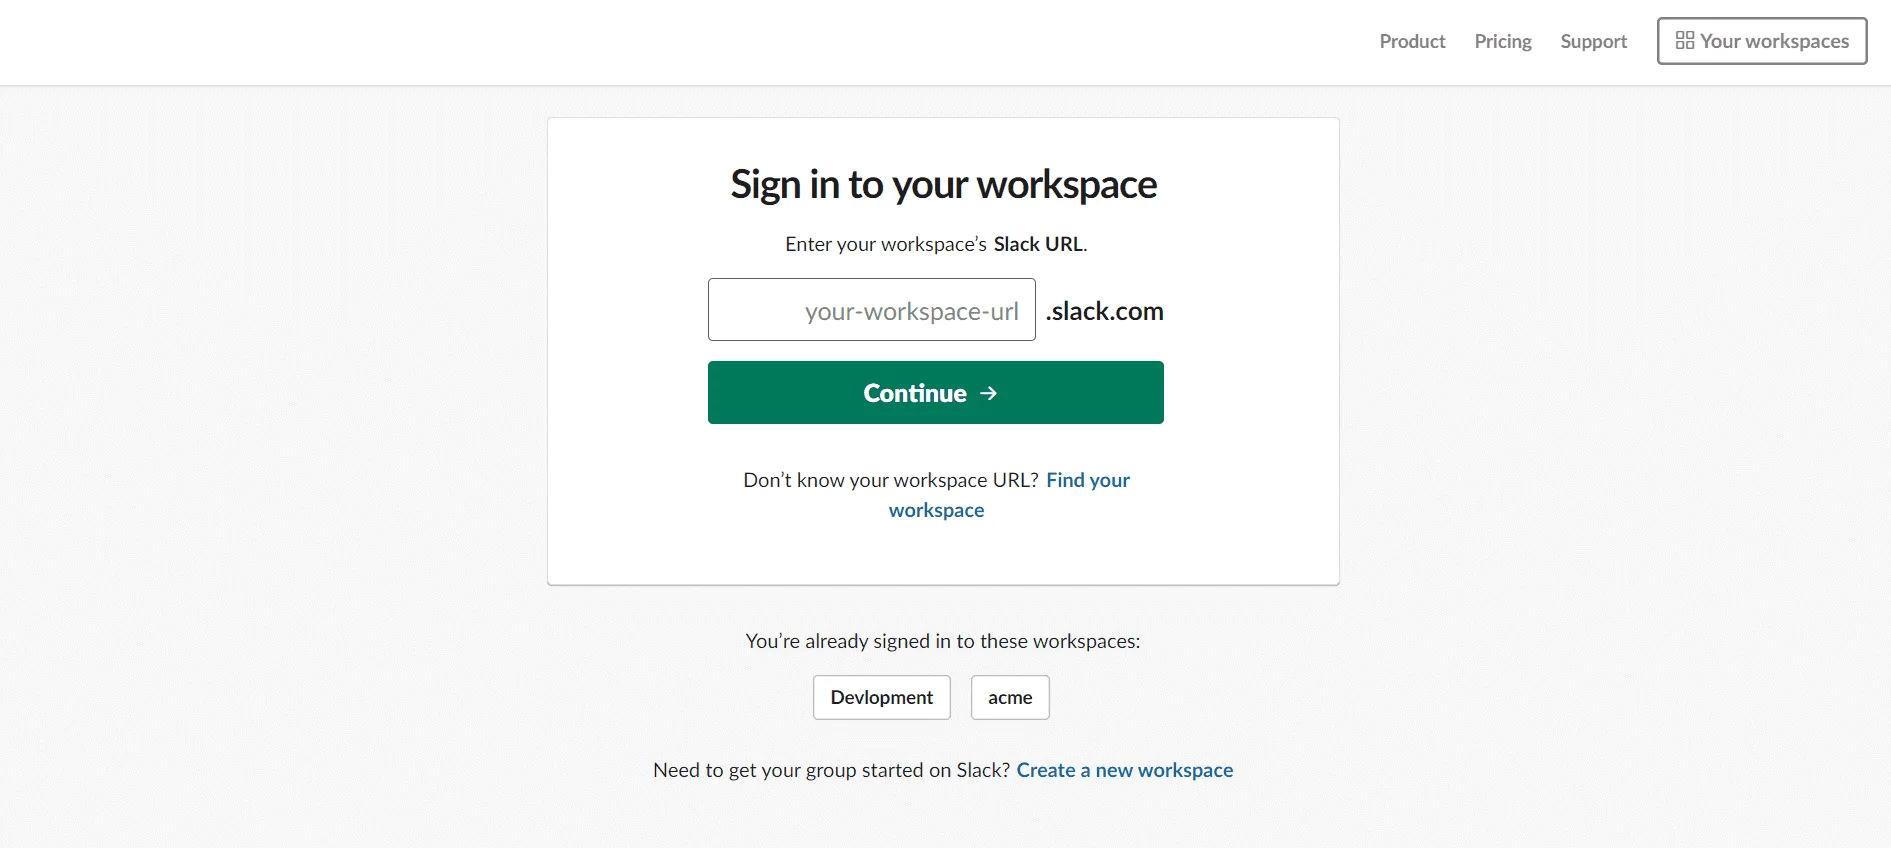 Slack SSO login with Drupal OAuth 2.0 OIDC Single Sign-on Slack SSO API Workspaces Slack URL